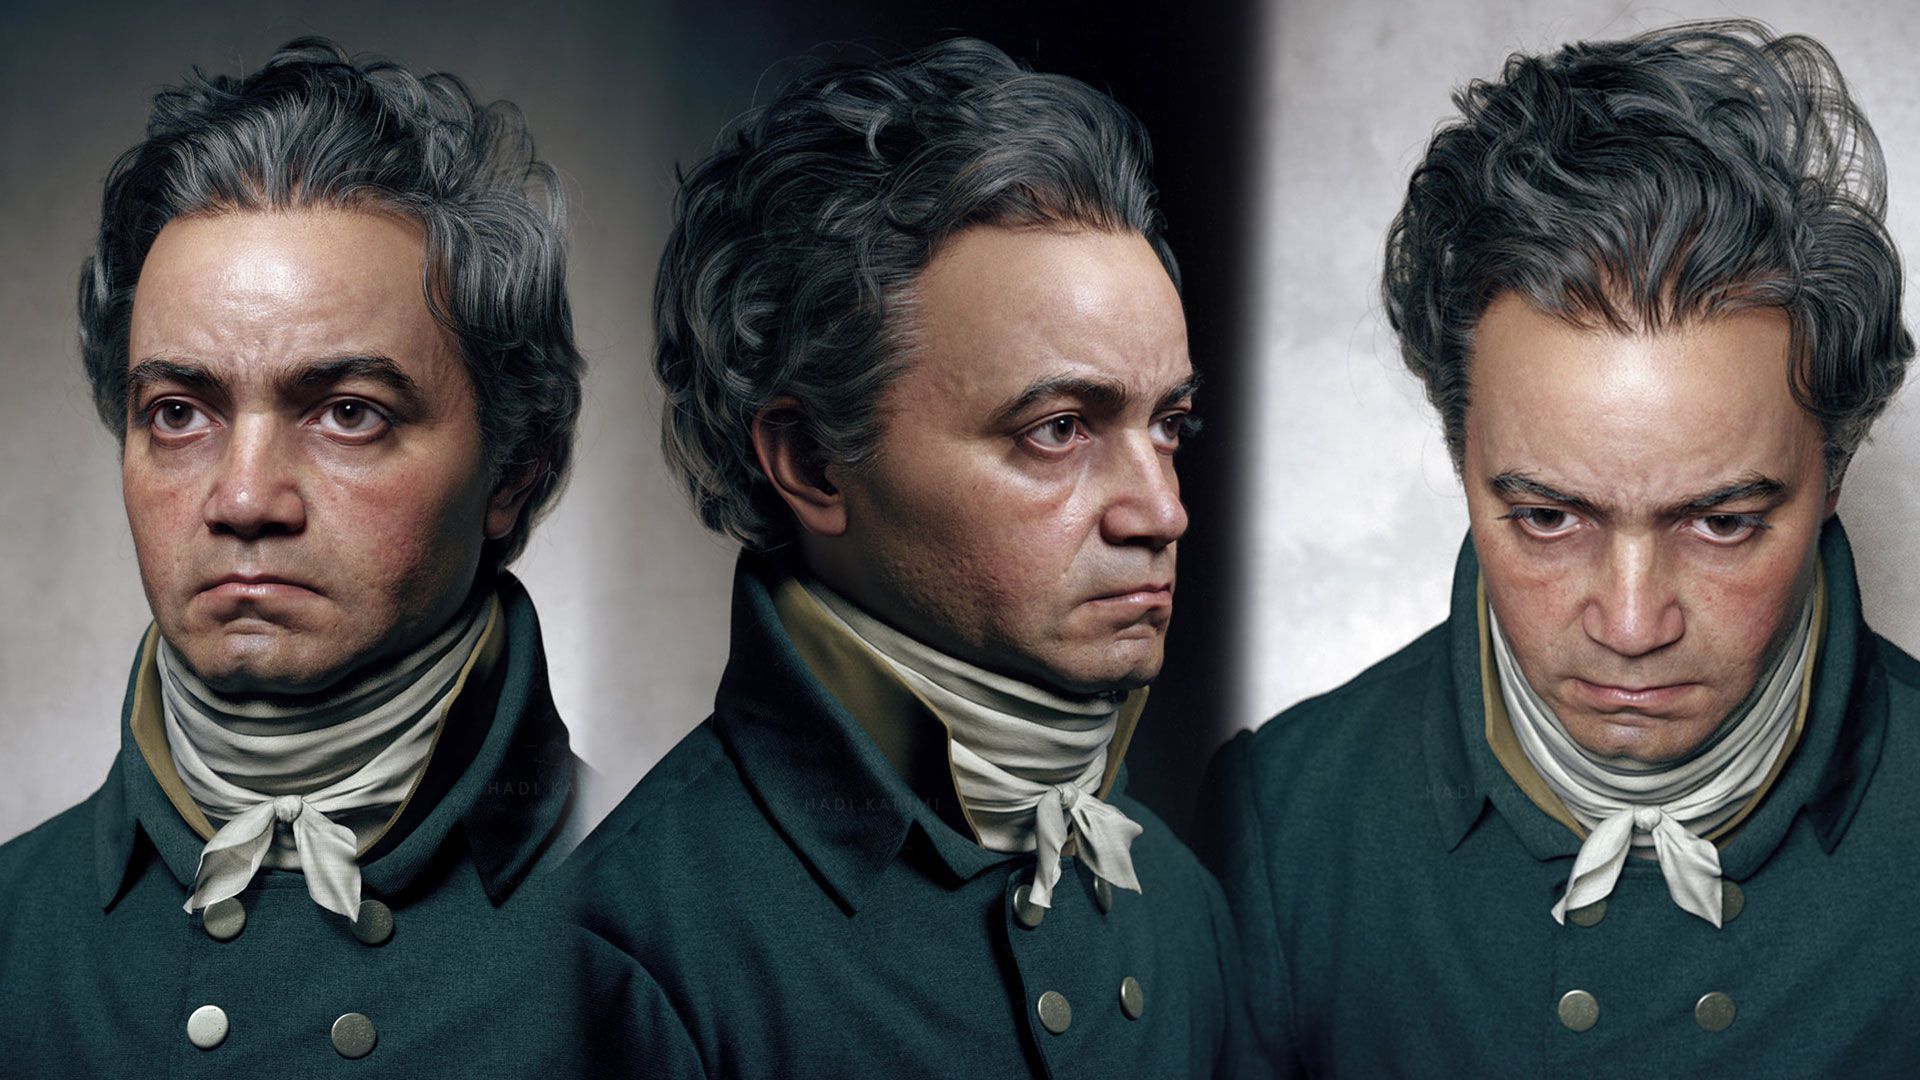 Un nouveau portrait de Beethoven, encore plus réaliste, réalisé par le plasticien Hadi Karimi